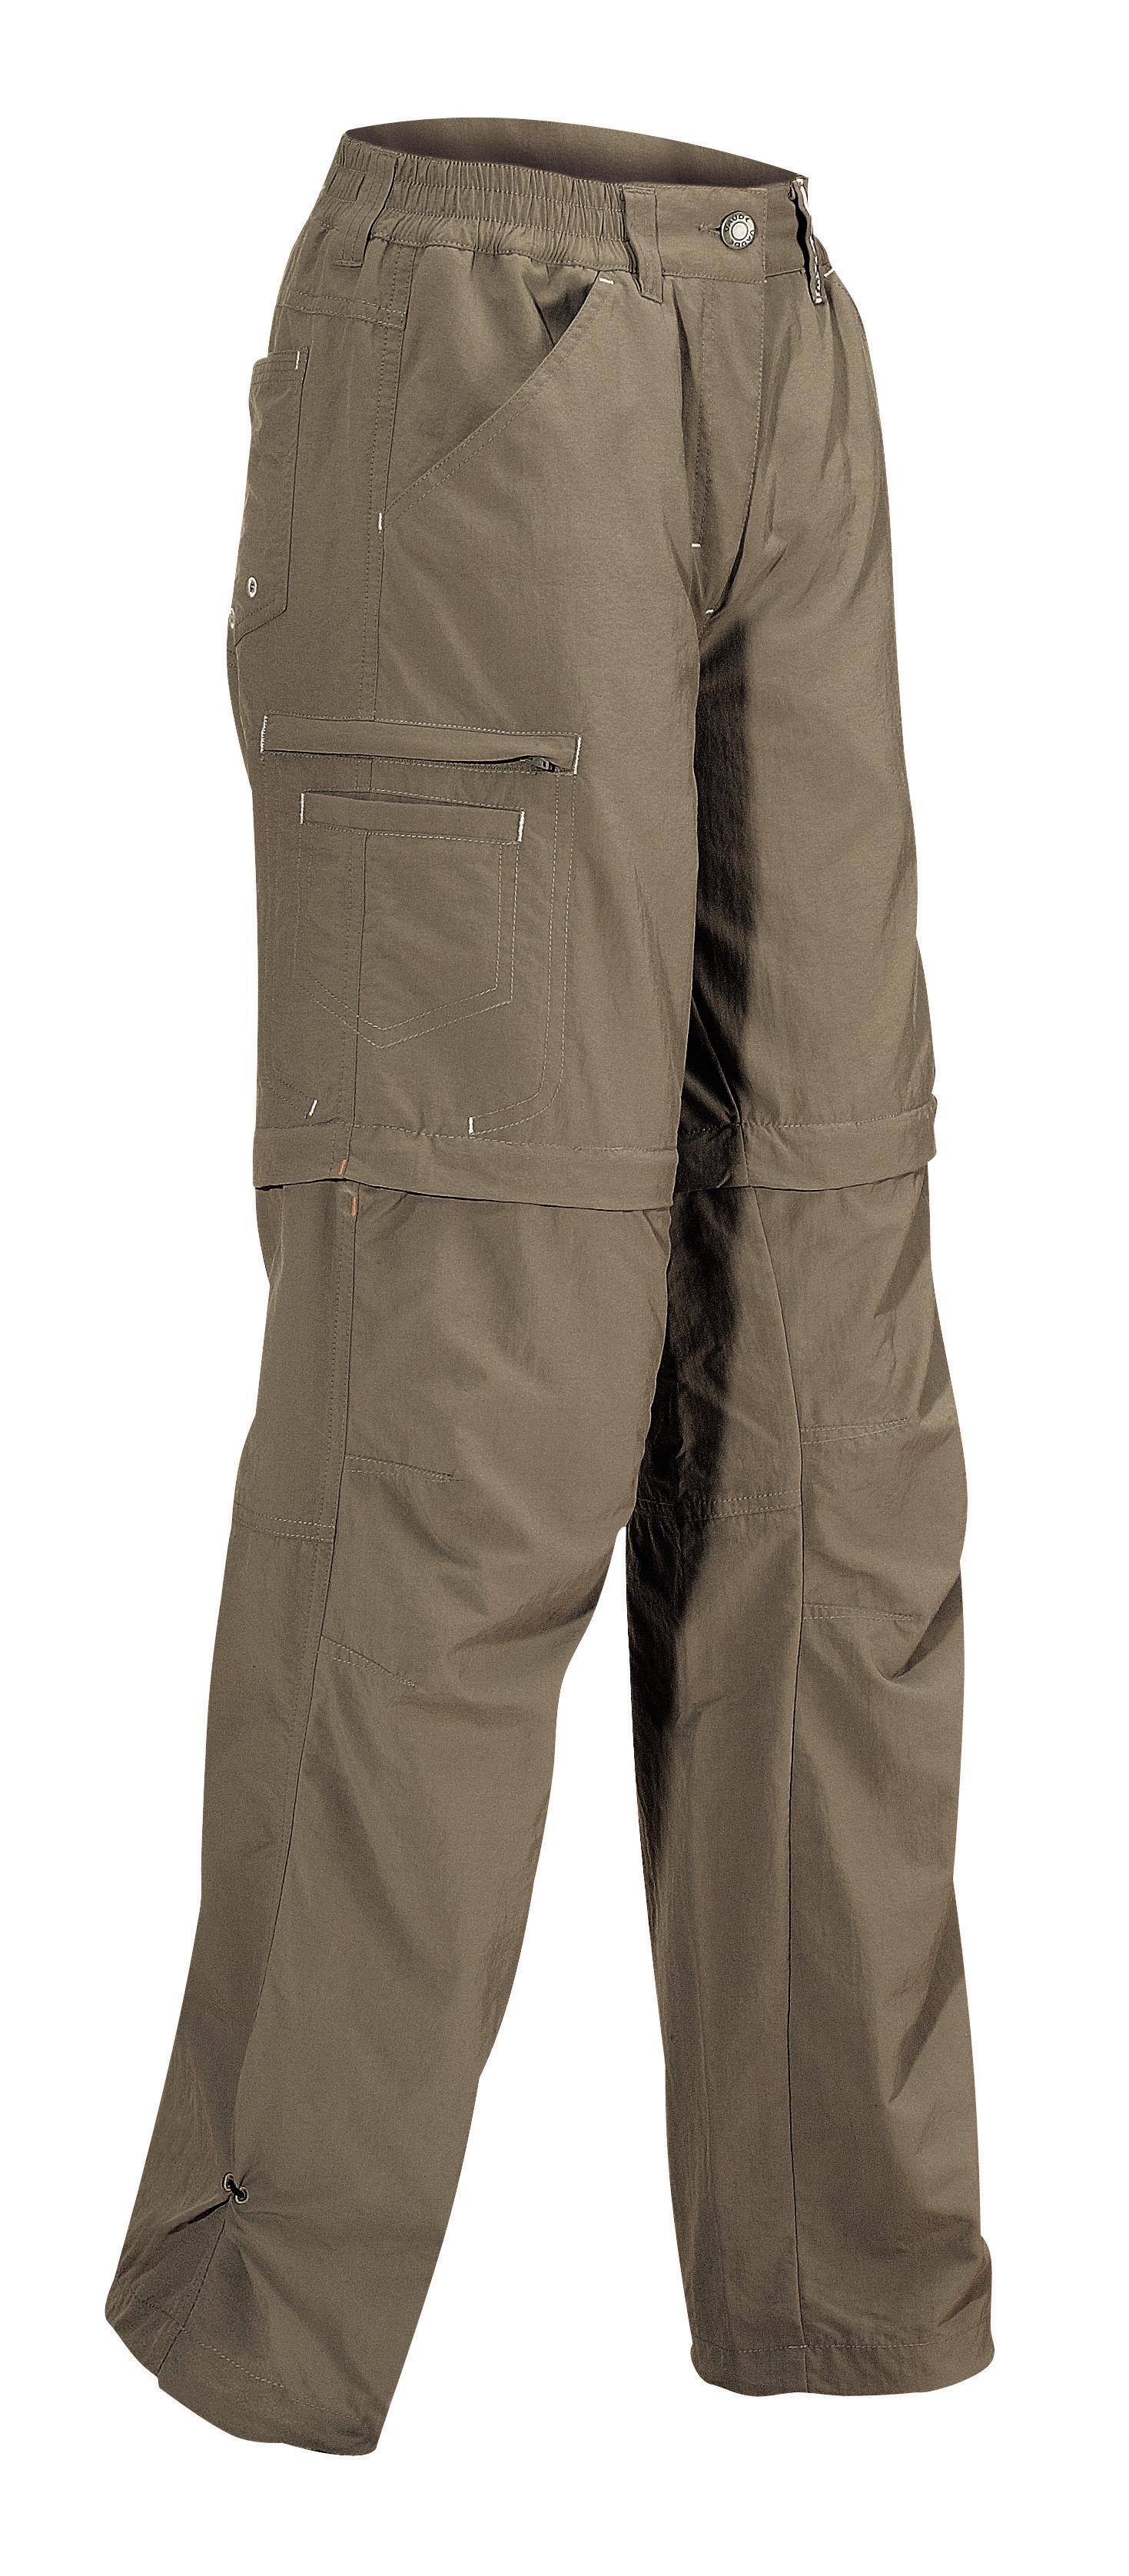 Foto Pantalones desmontables Vaude Farley III gris/marrón para mujer , 40 foto 414027